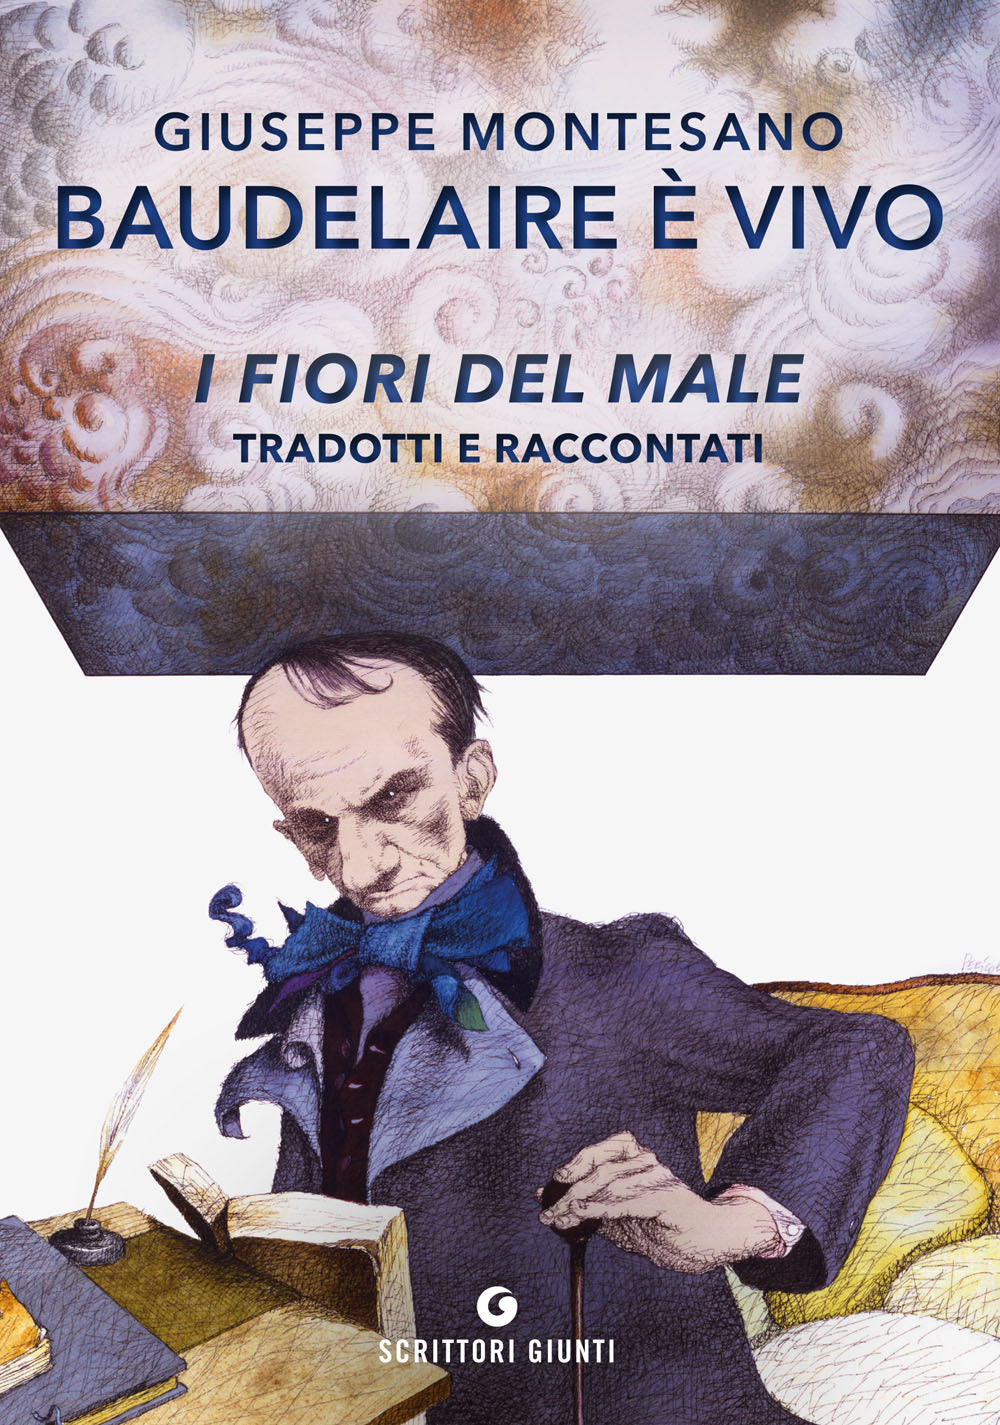 Baudelaire è vivo::I fiori del male tradotti e raccontati